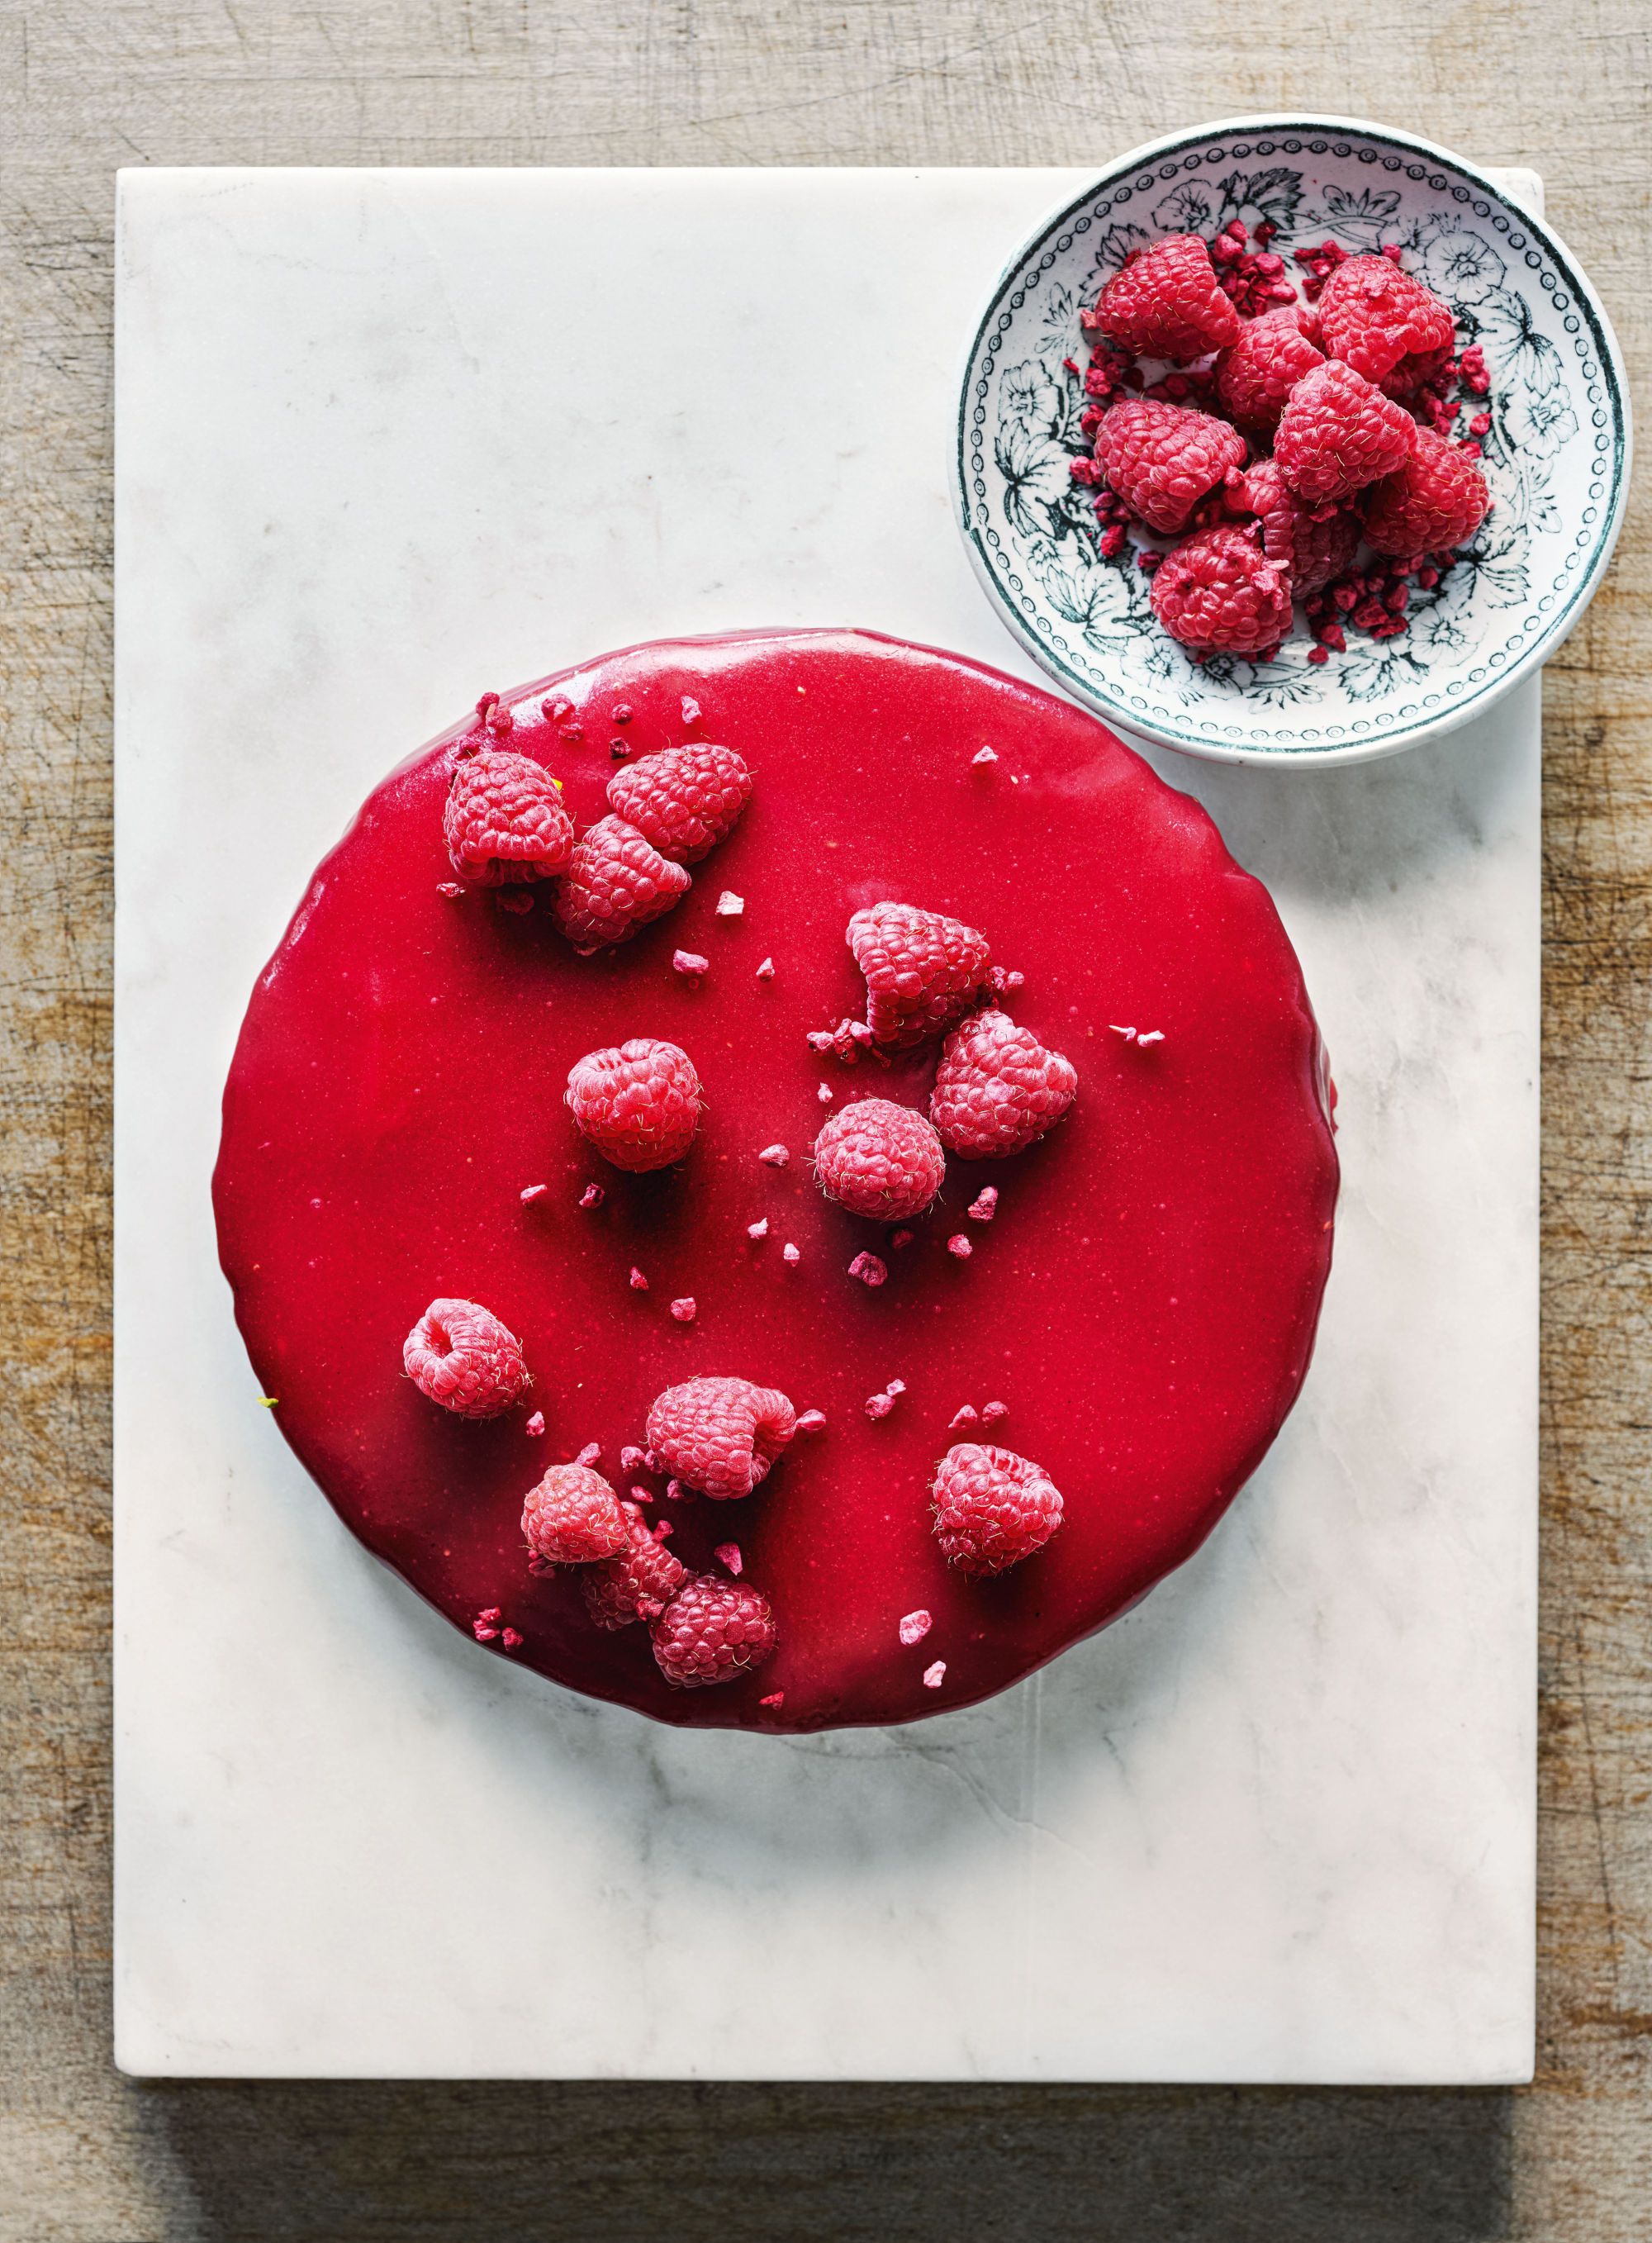 Chocolate truffle cake with rapsberry glaze. The raspberry glaze uses sheet gelatin.
